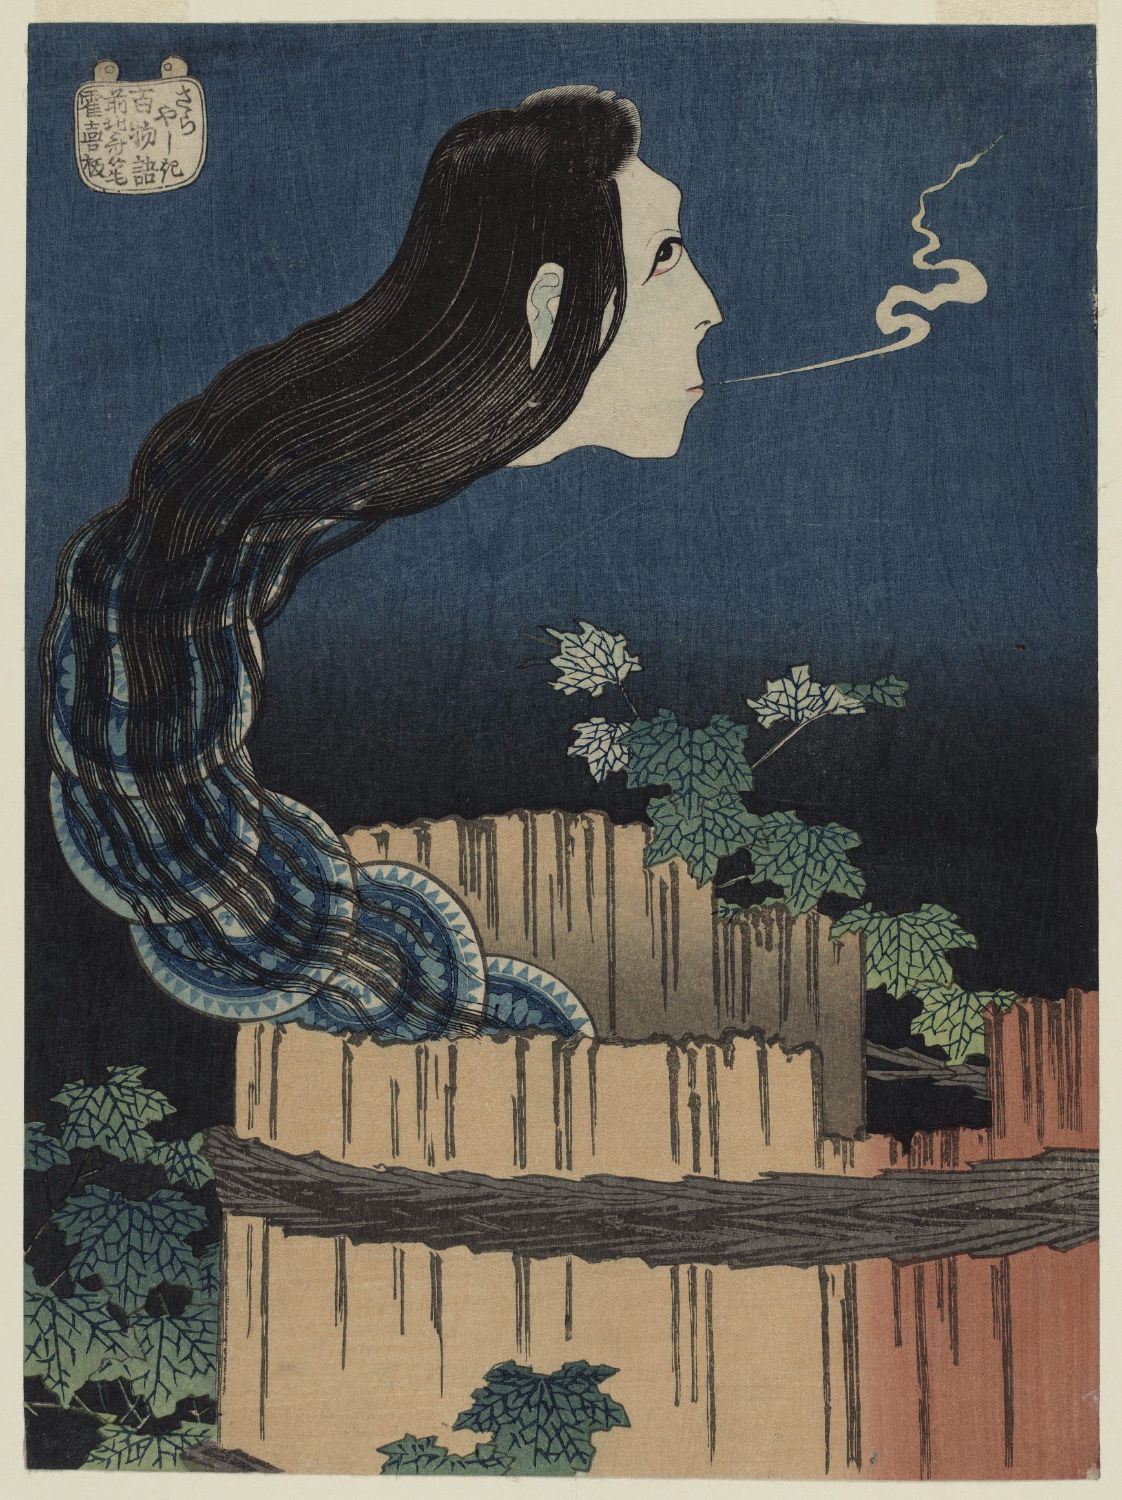 A Mansão dos Pratos by Katsushika Hokusai - 1831/32 